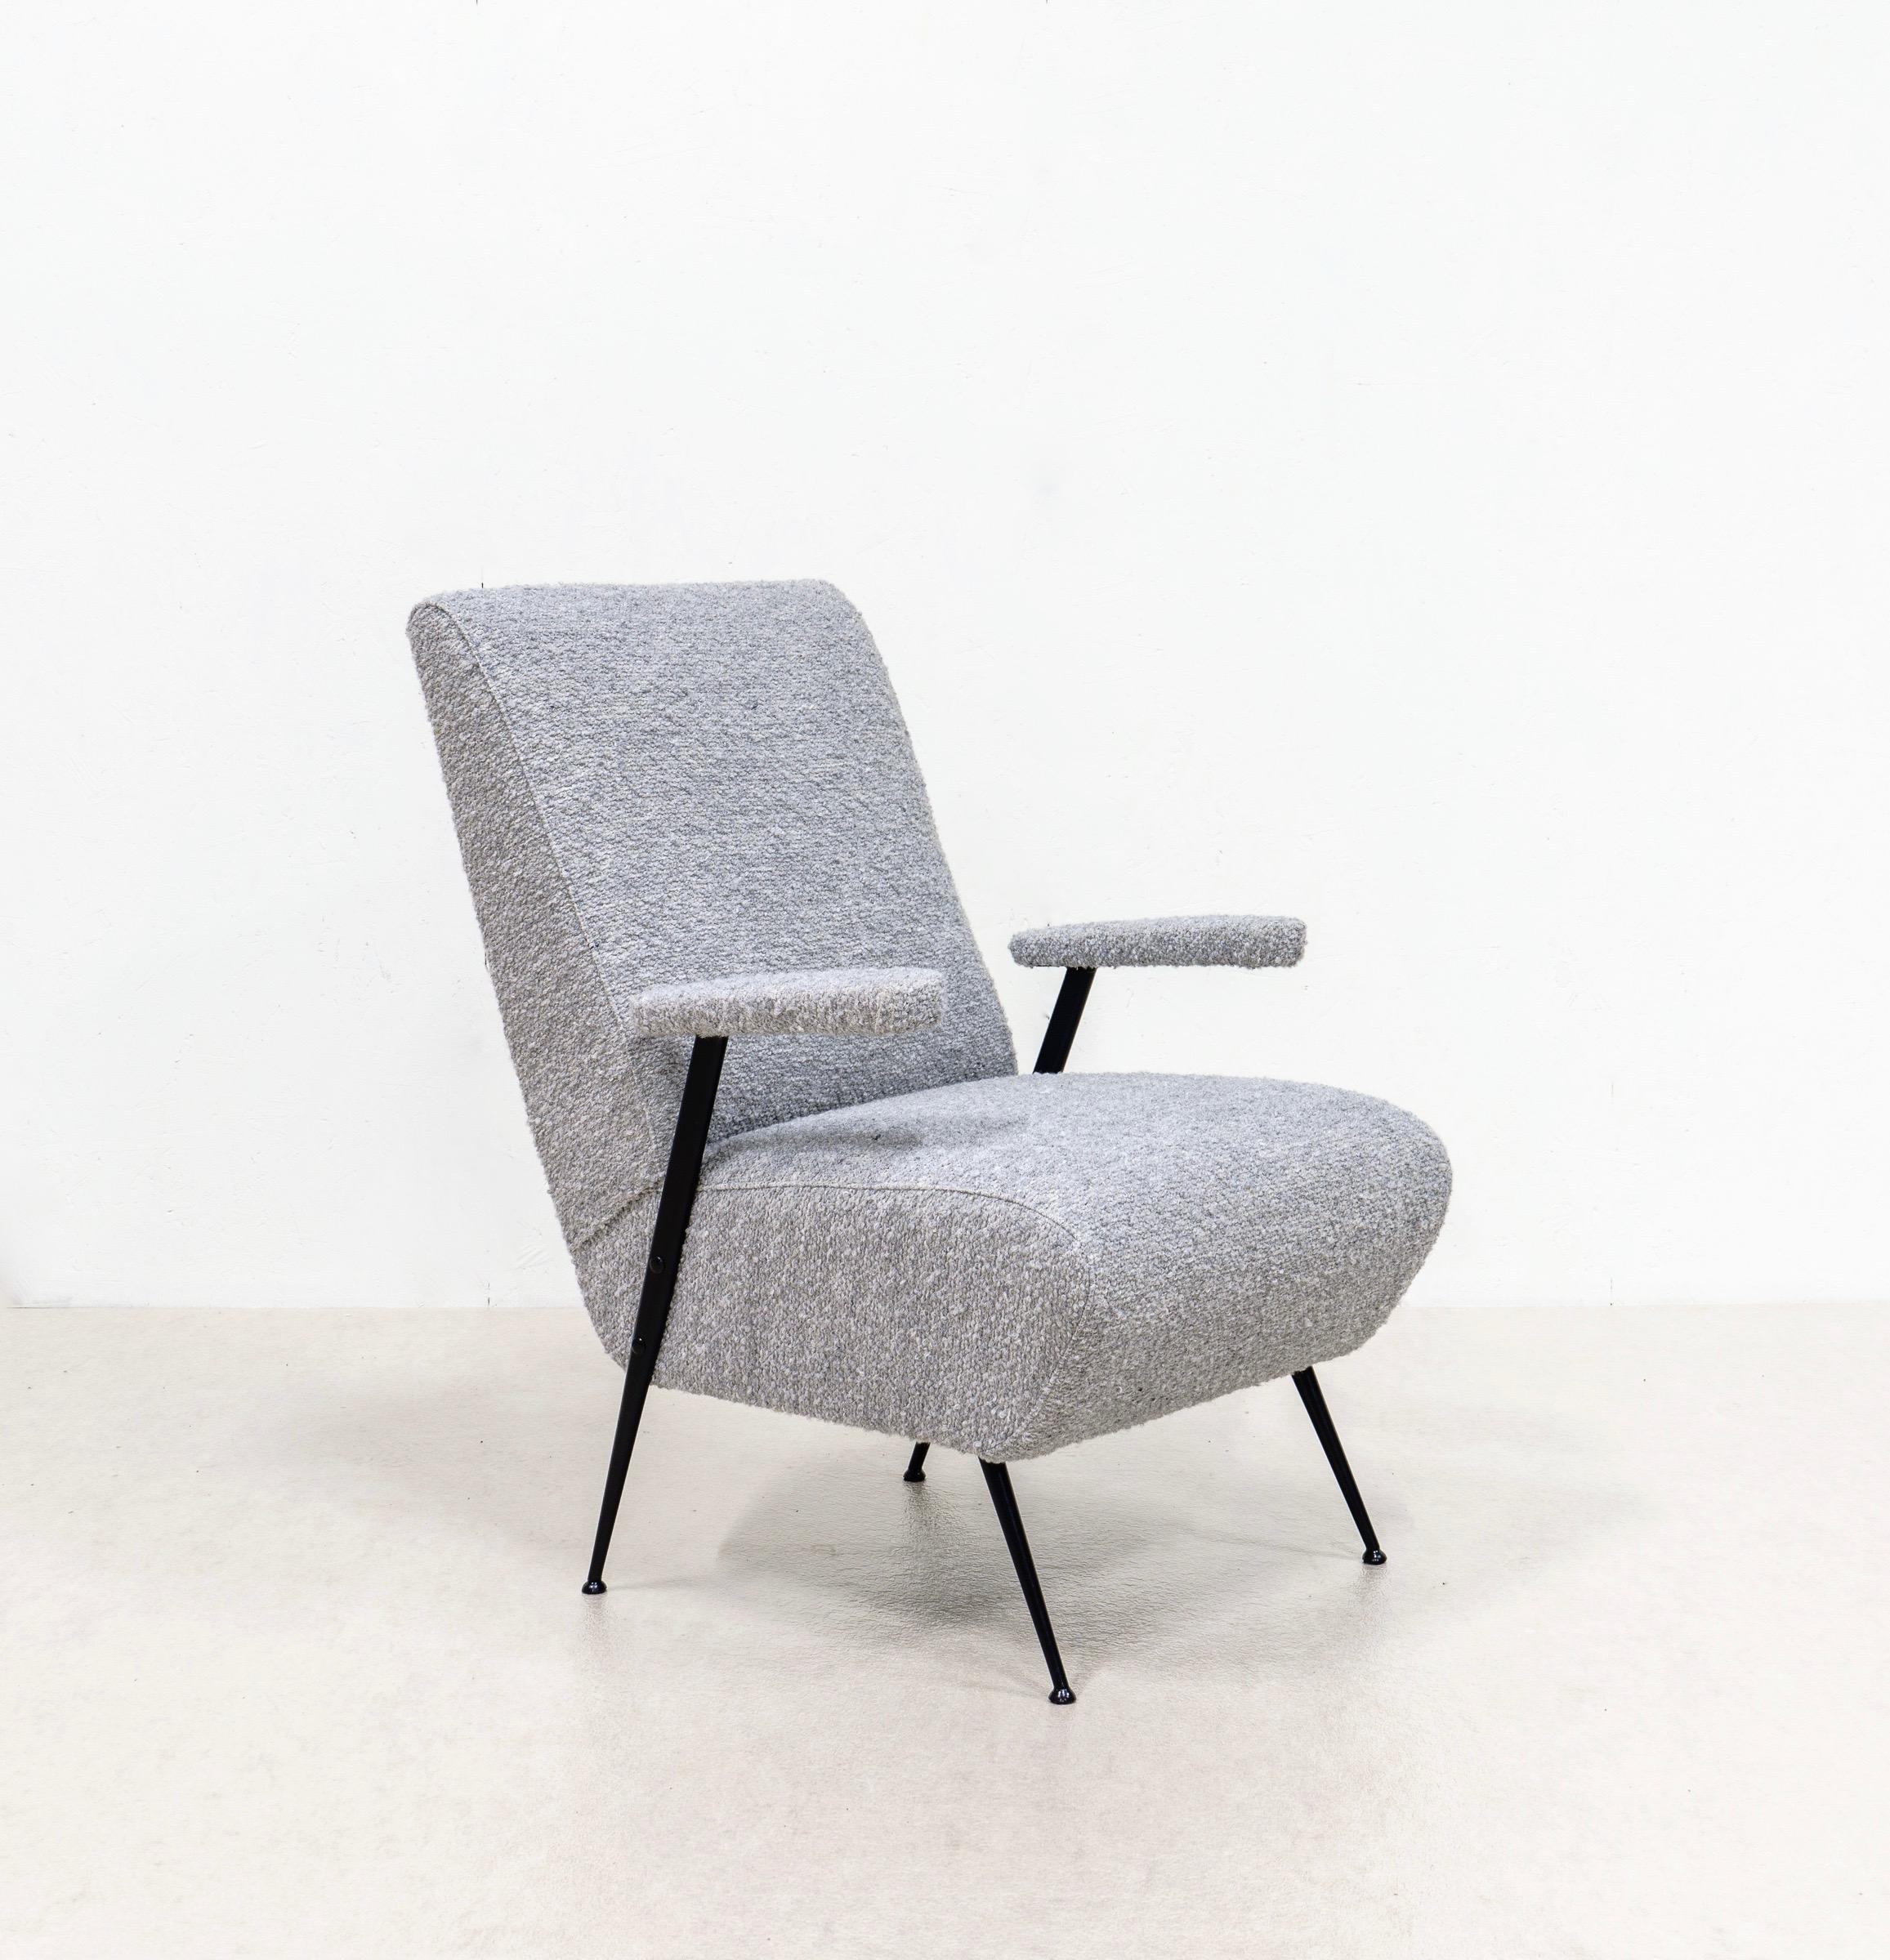 Cette paire de fauteuils est très confortable et nouvellement tapissée d'une belle laine bouclée grise.